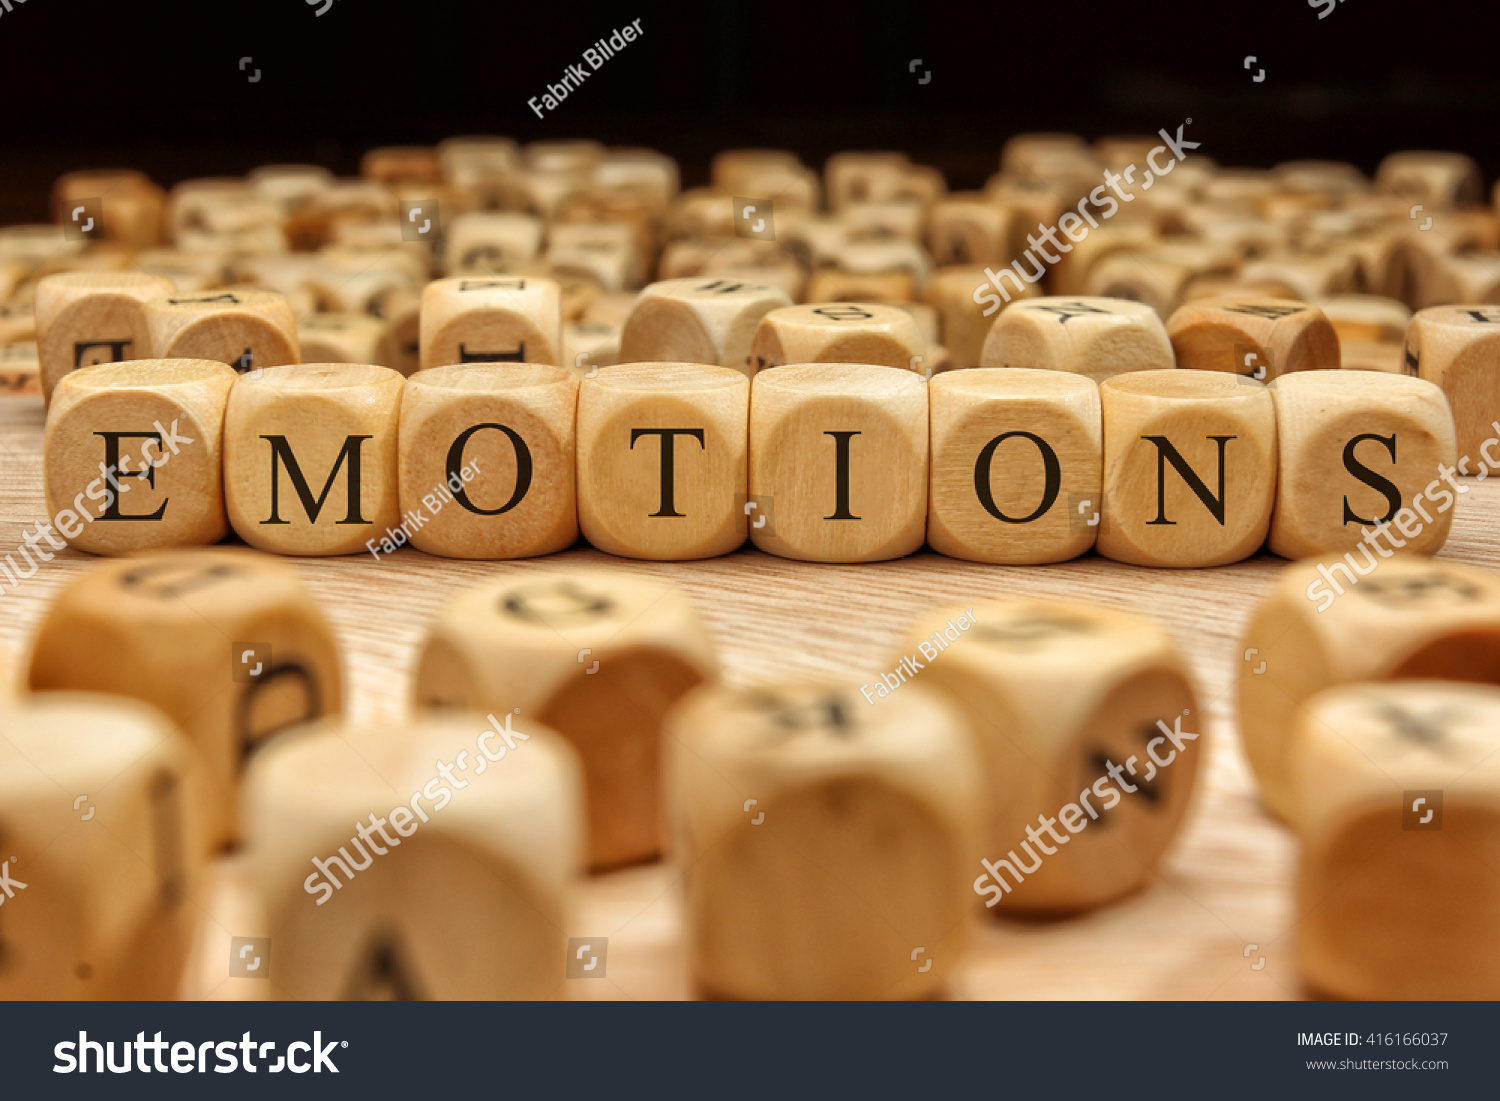 EMOTIONS word written on wood block #416166037